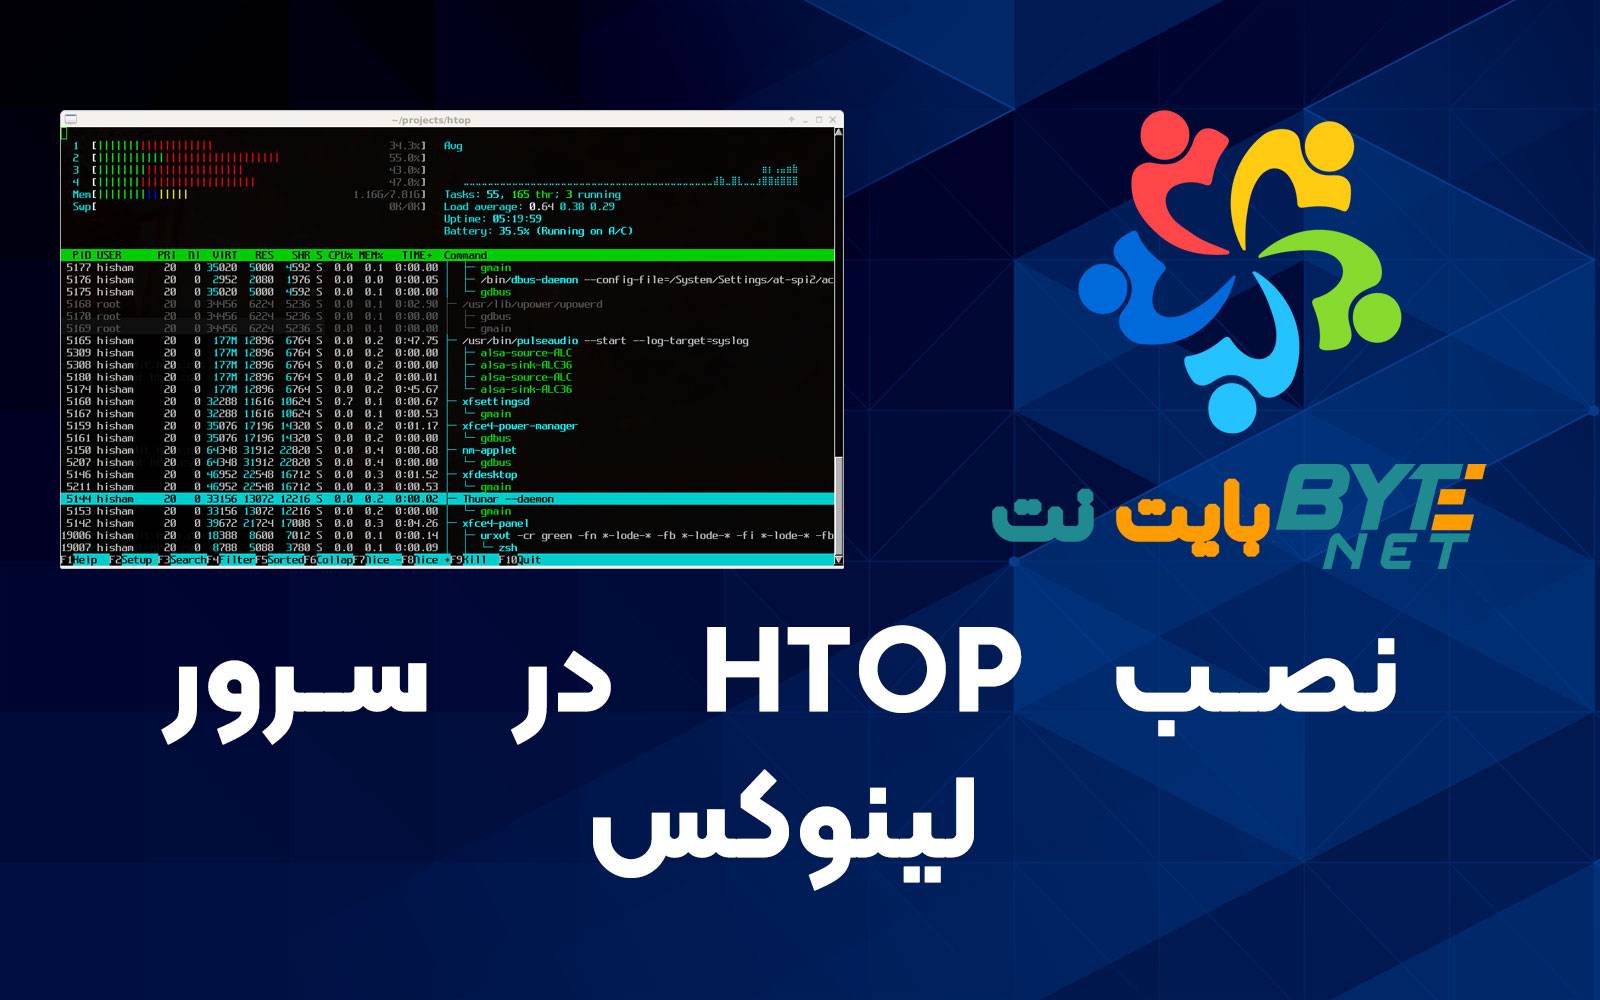 آموزش نصب ابزار htop در لینوکس